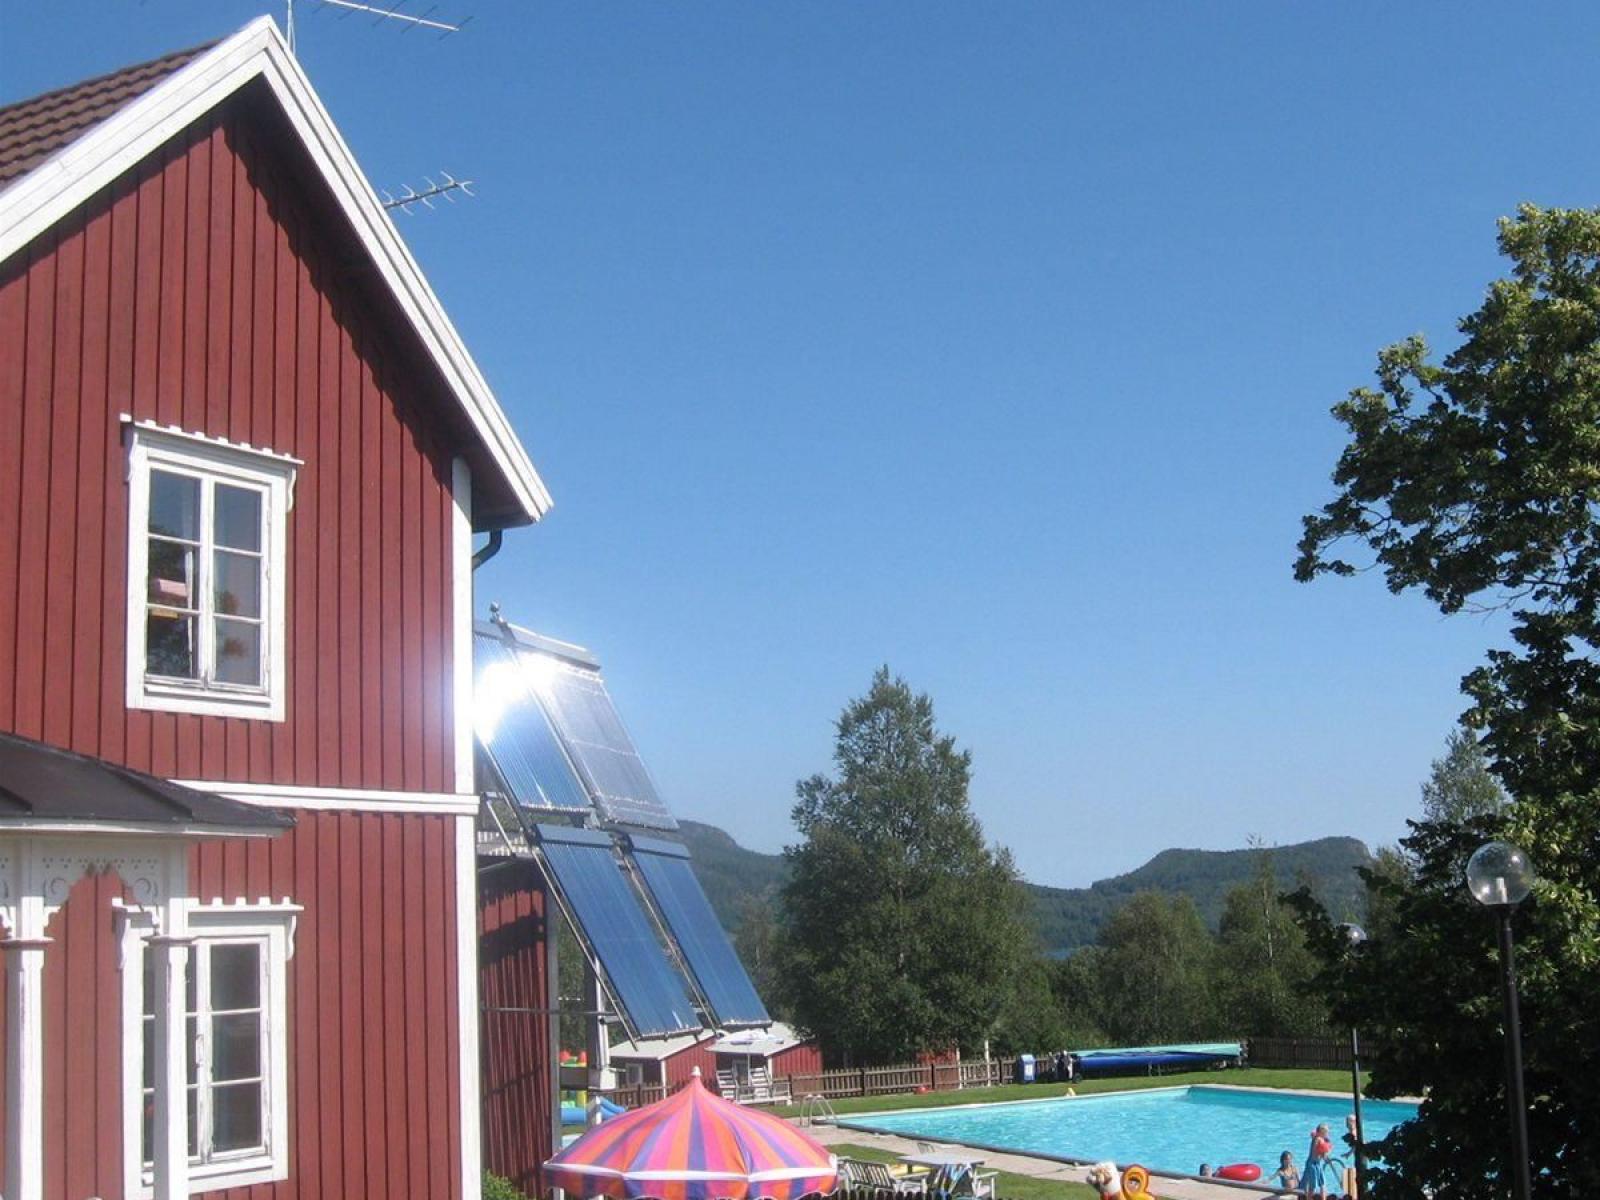 I anslutning till  Kustladans restaurang ligger docksta vandrahem och camping med pool, hoppborg och minigolf. På fredagar anordnas dans på logen hela sommaren. 